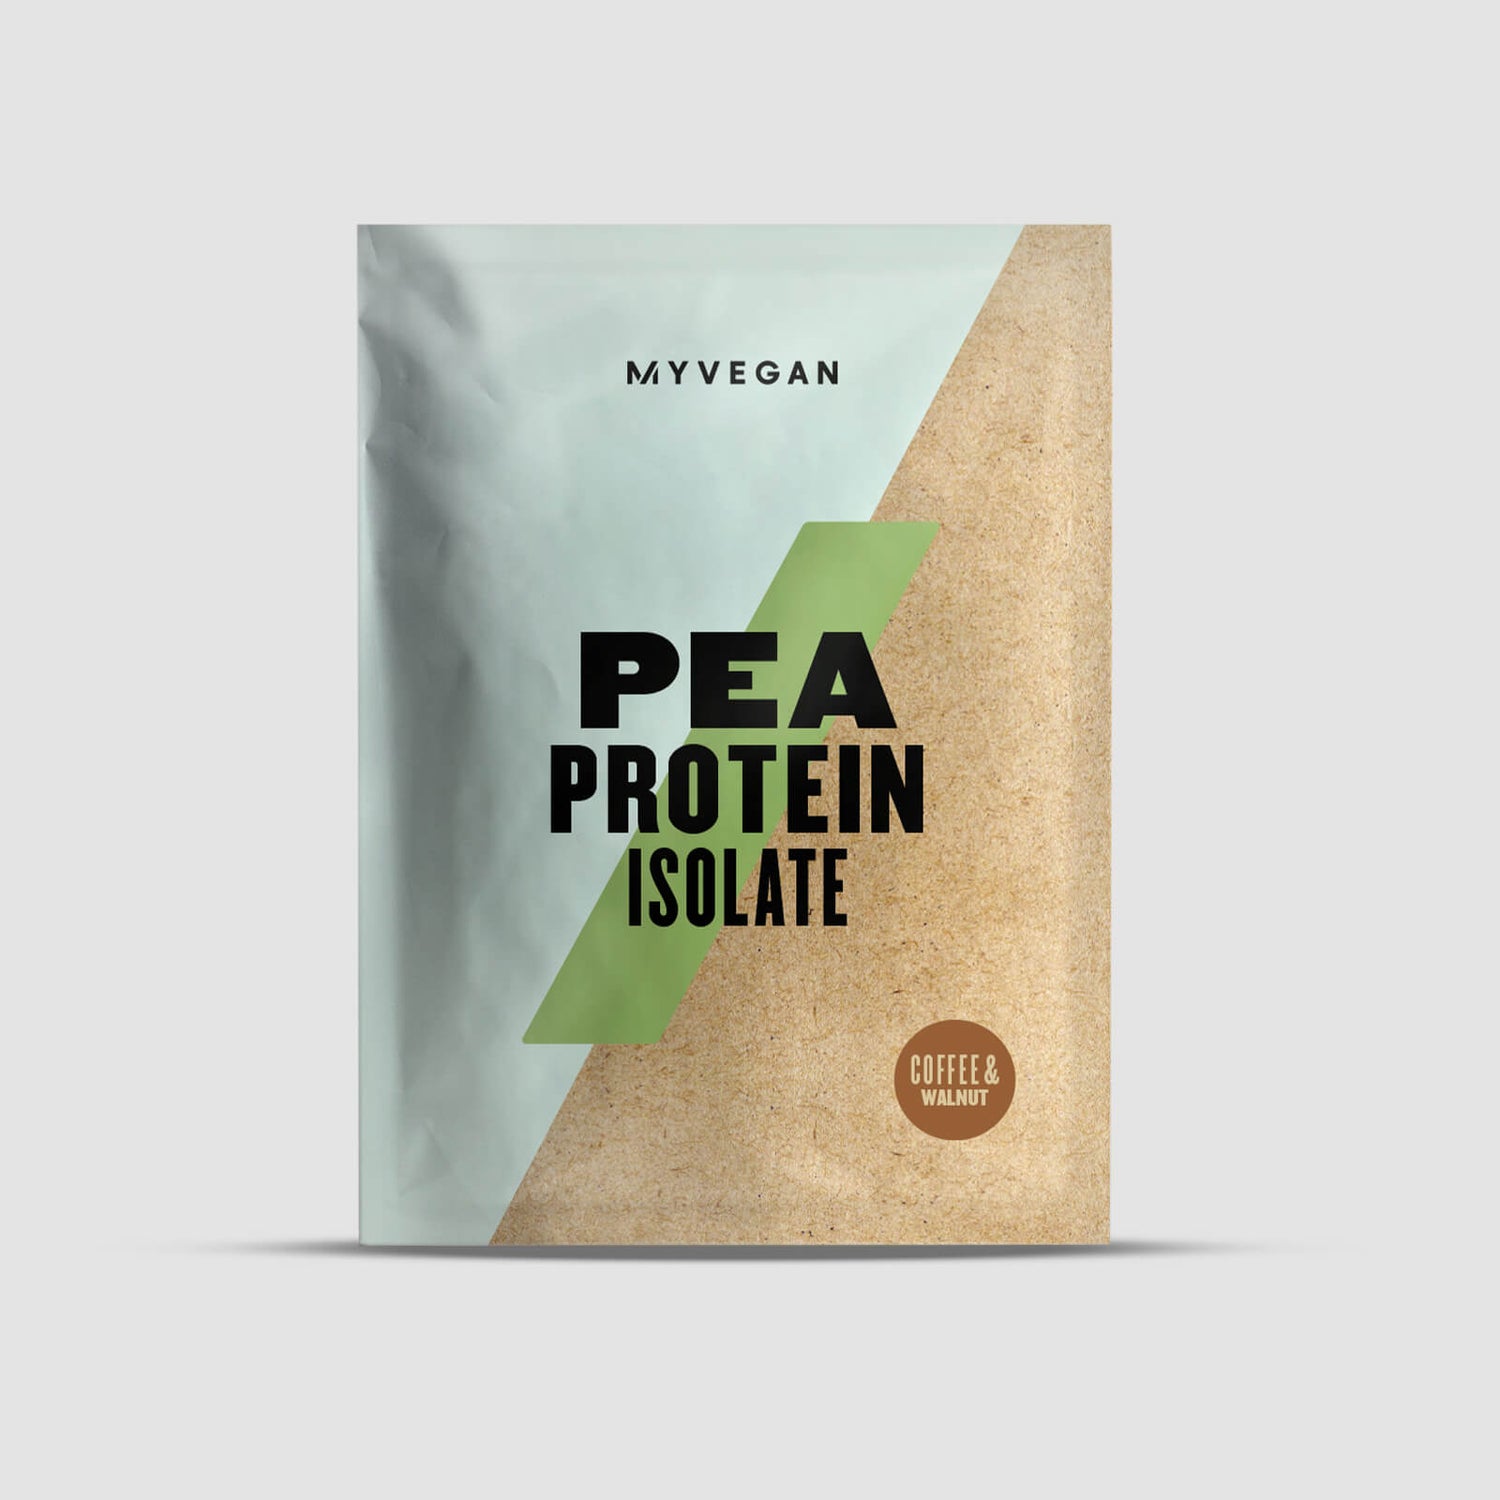 Myvegan Žirnių baltymų izoliatas - Coffee & Walnut